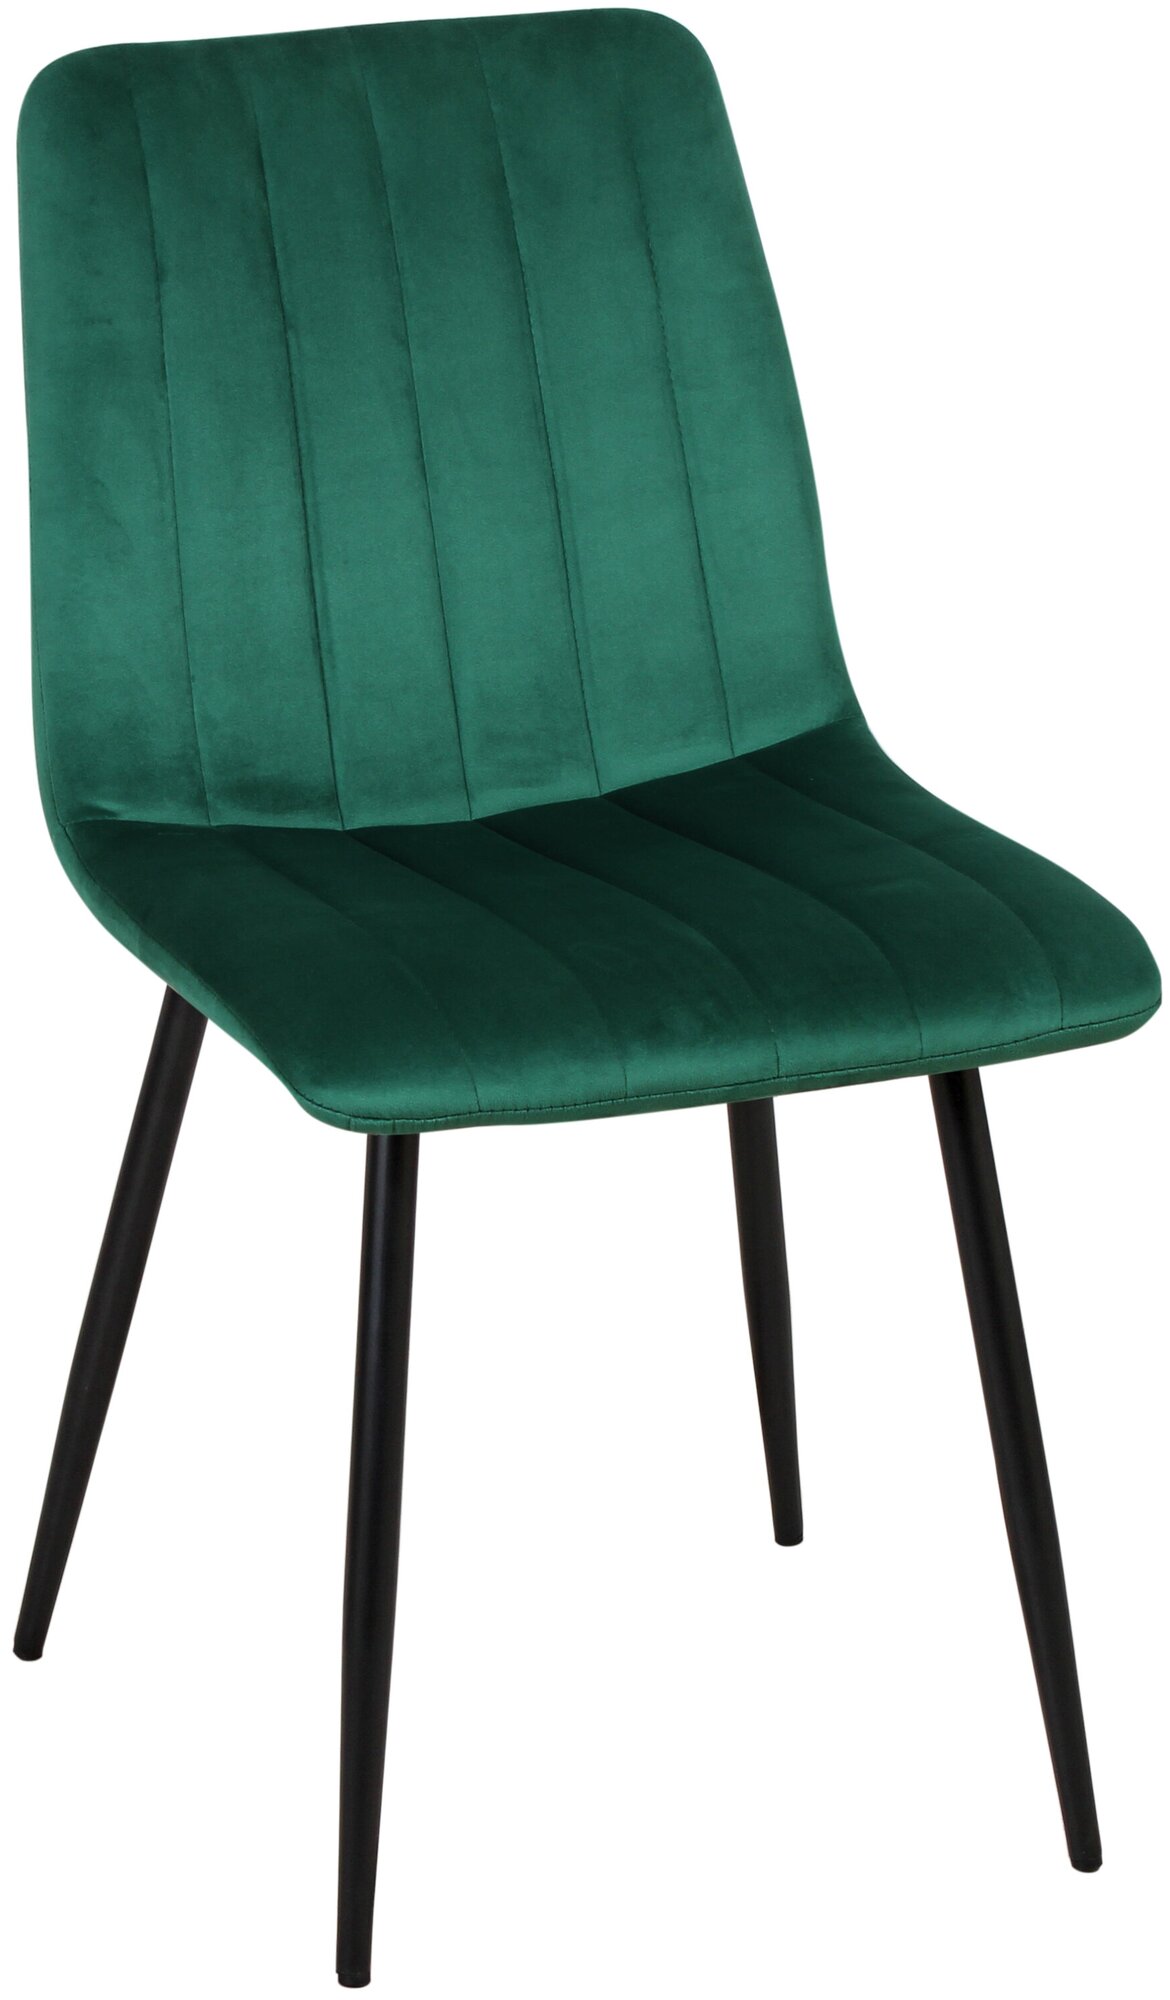 Стул обеденный Дублин РФ-240 цвет сиденья зелёный велюр, черные ножки